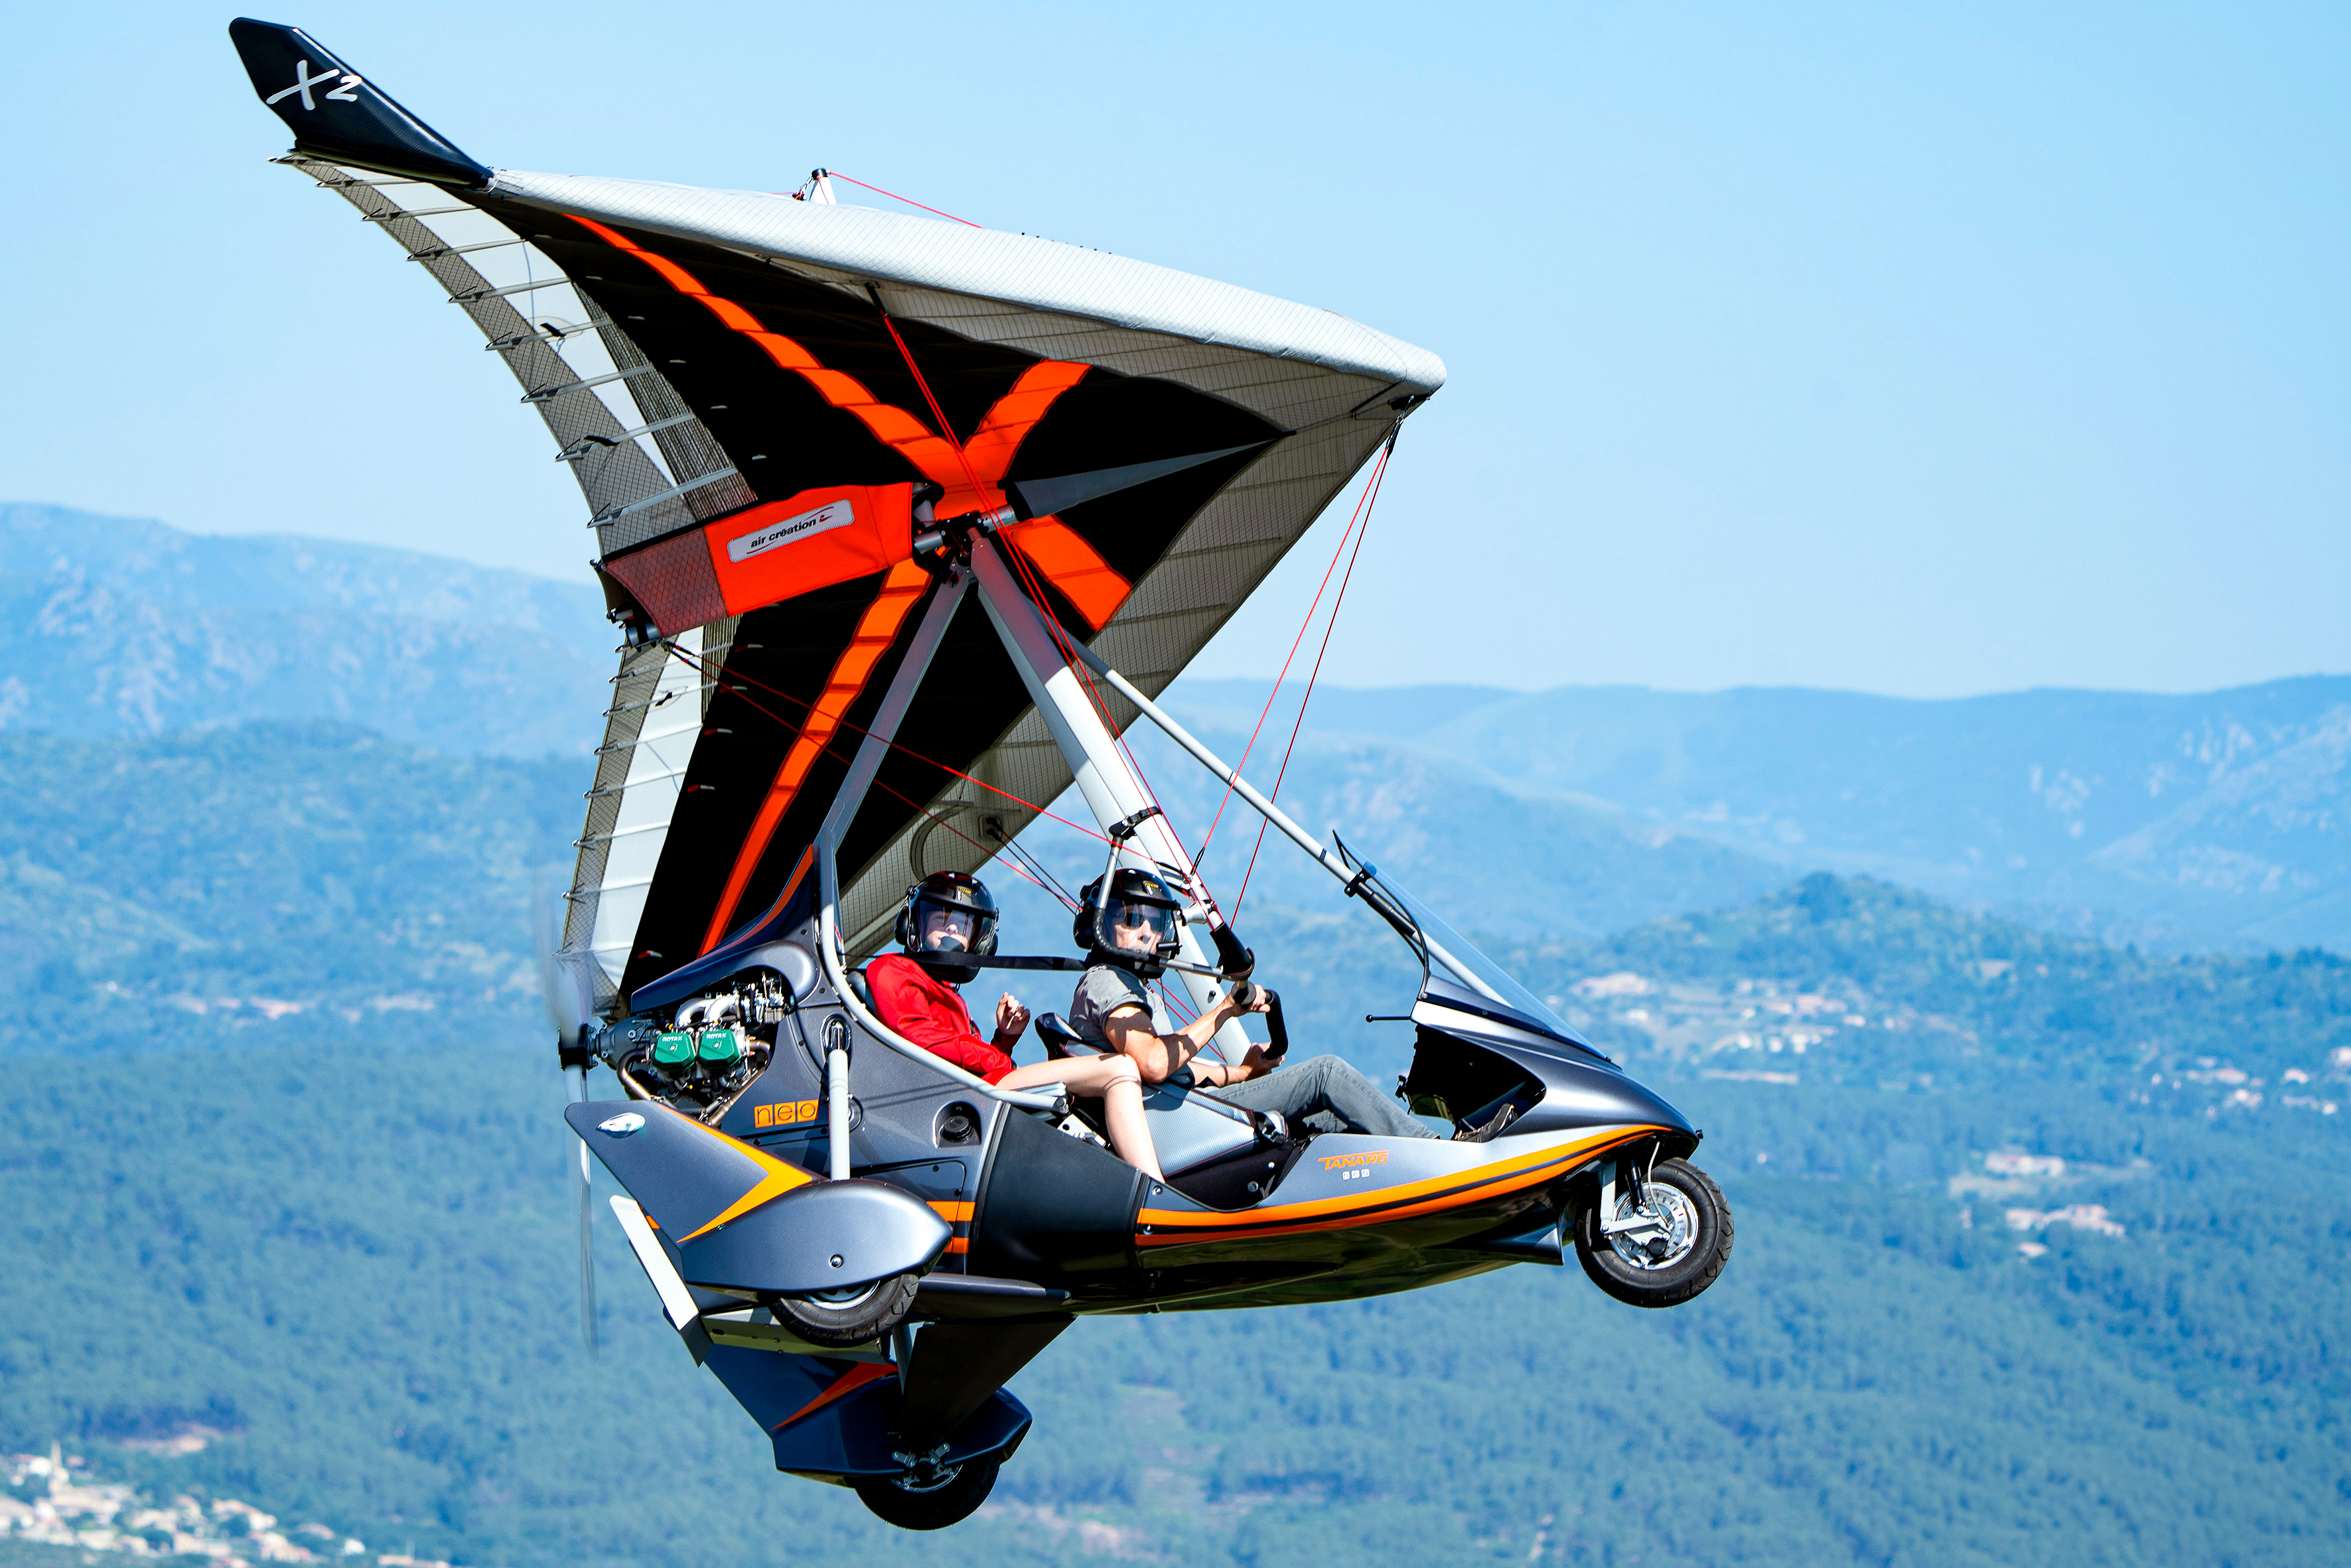 fly/en-vol-bionix2-tanarg-neo-en-vol-in-fly-ulm-pendulaire-ultralight-trike-wings-29.jpg